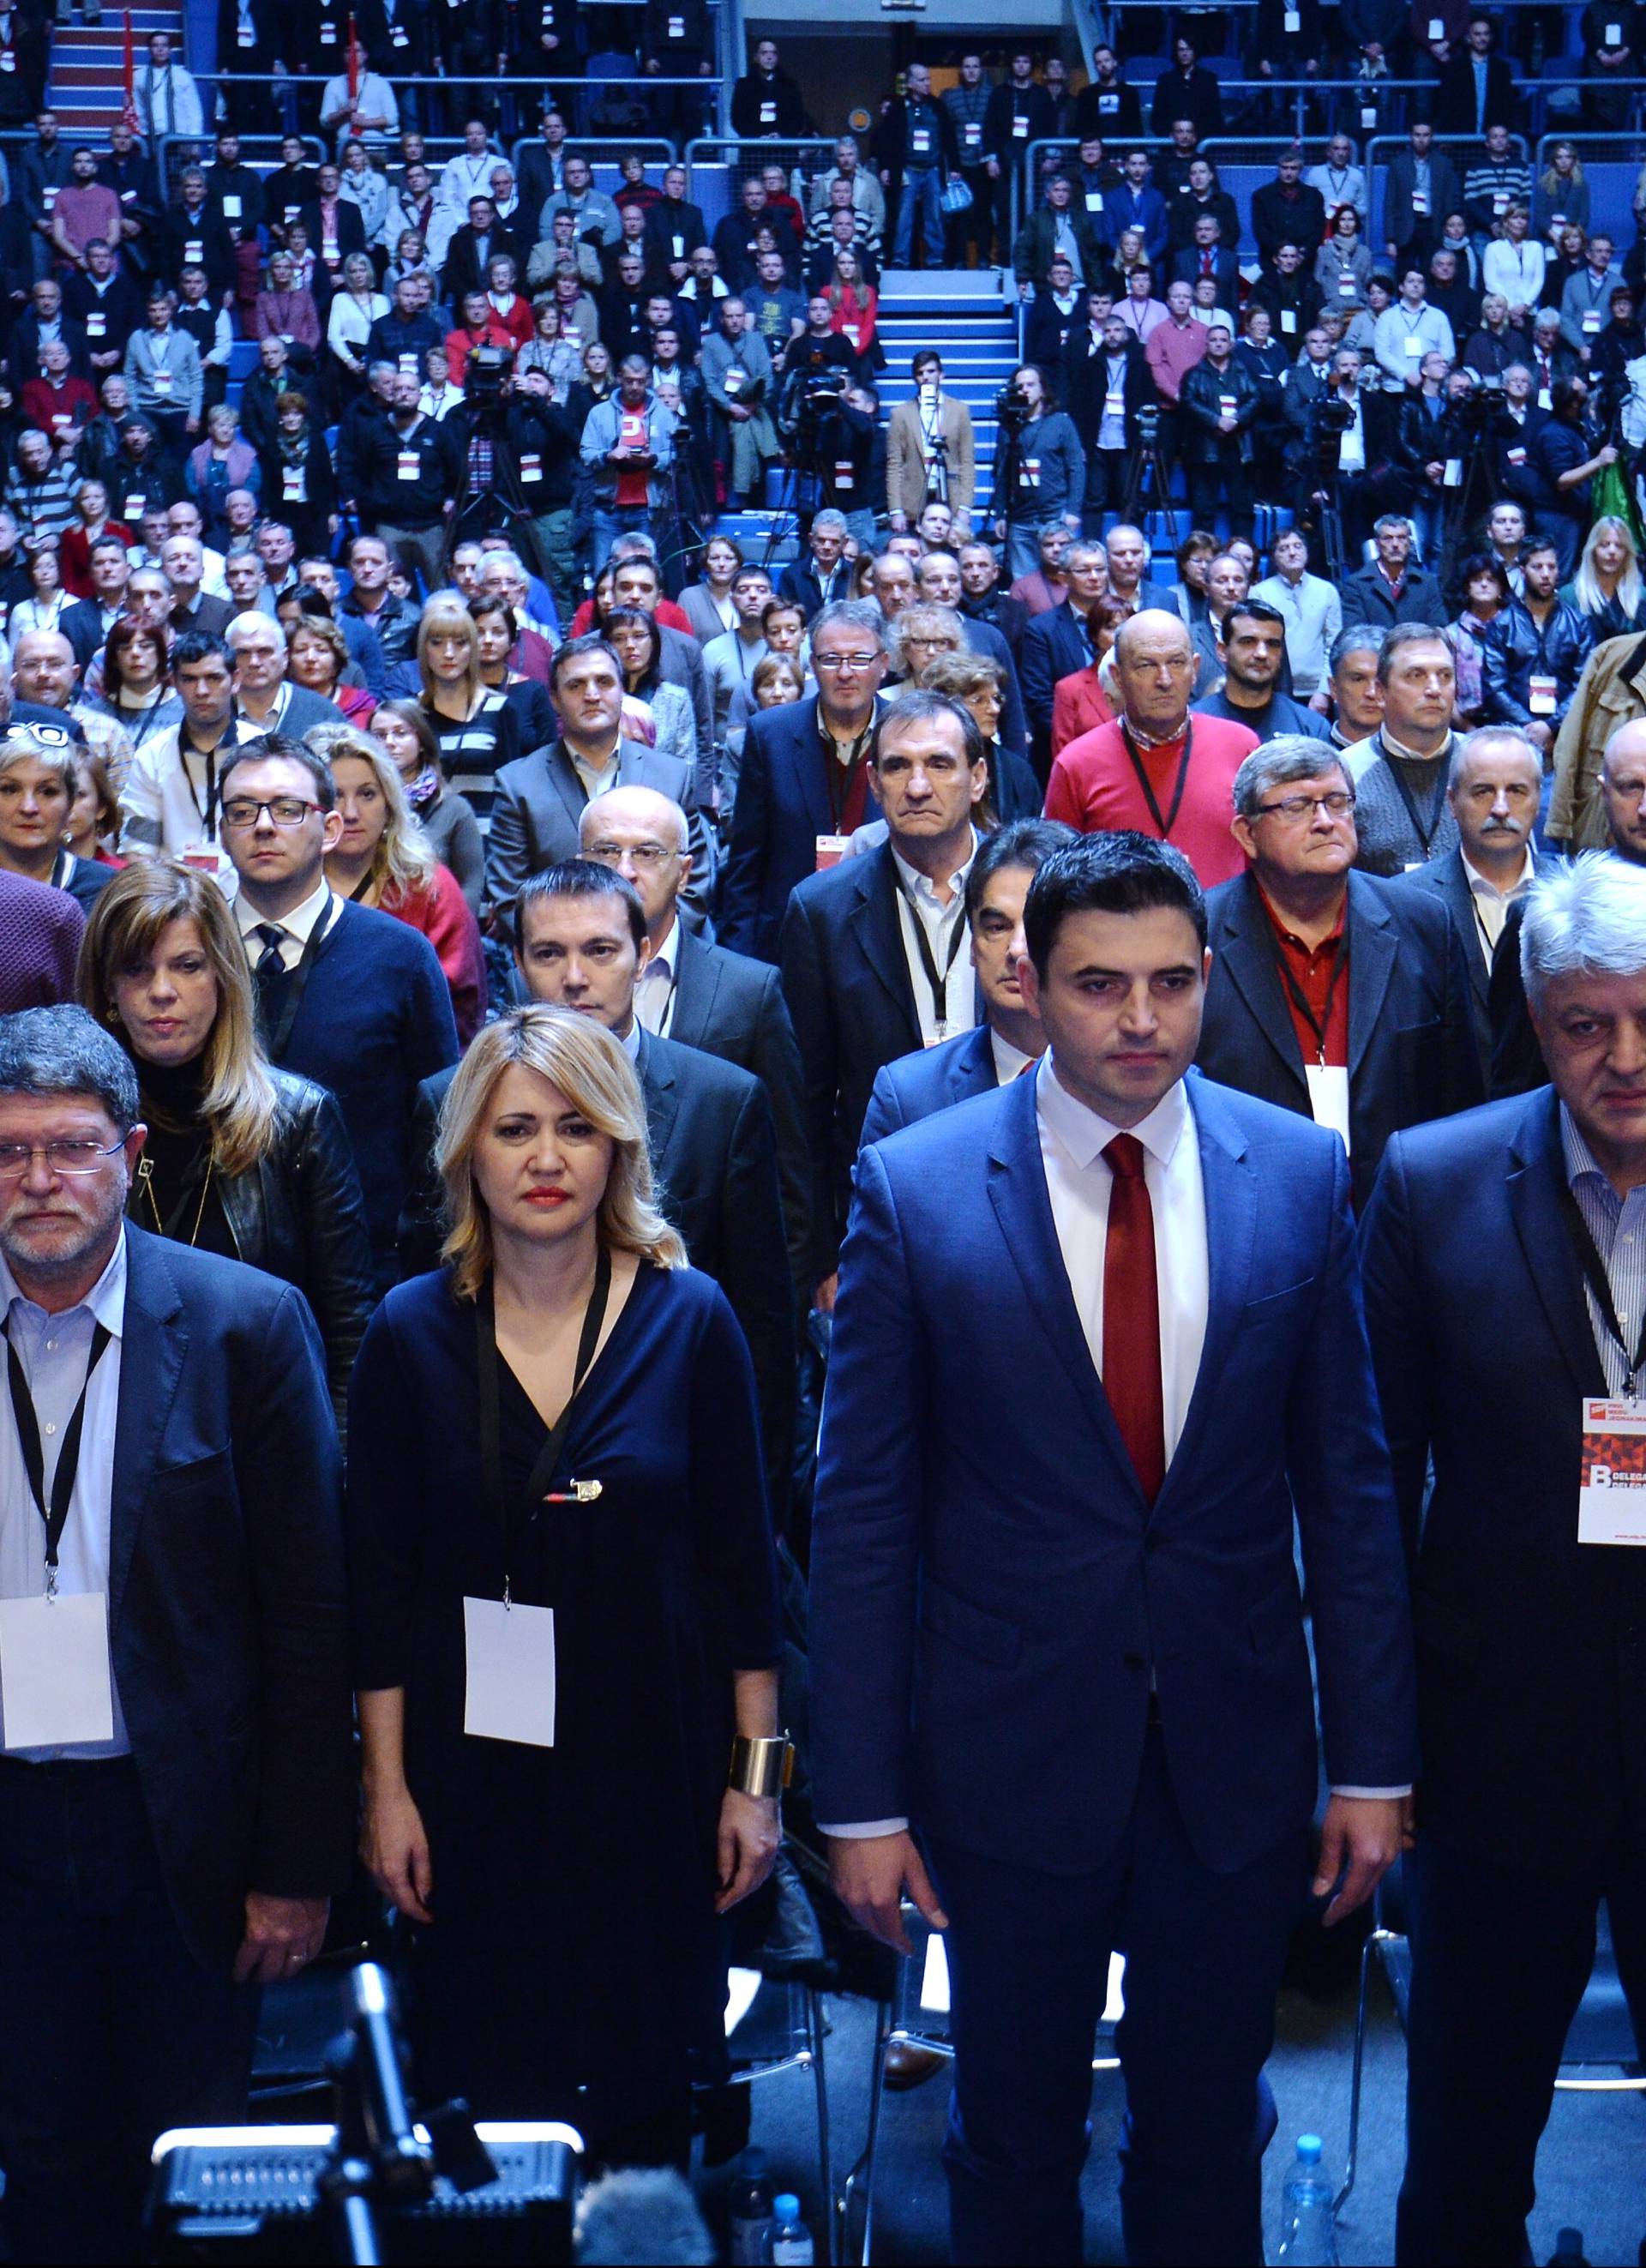 14. Konvencija Socijaldemokratske partije Hrvatske